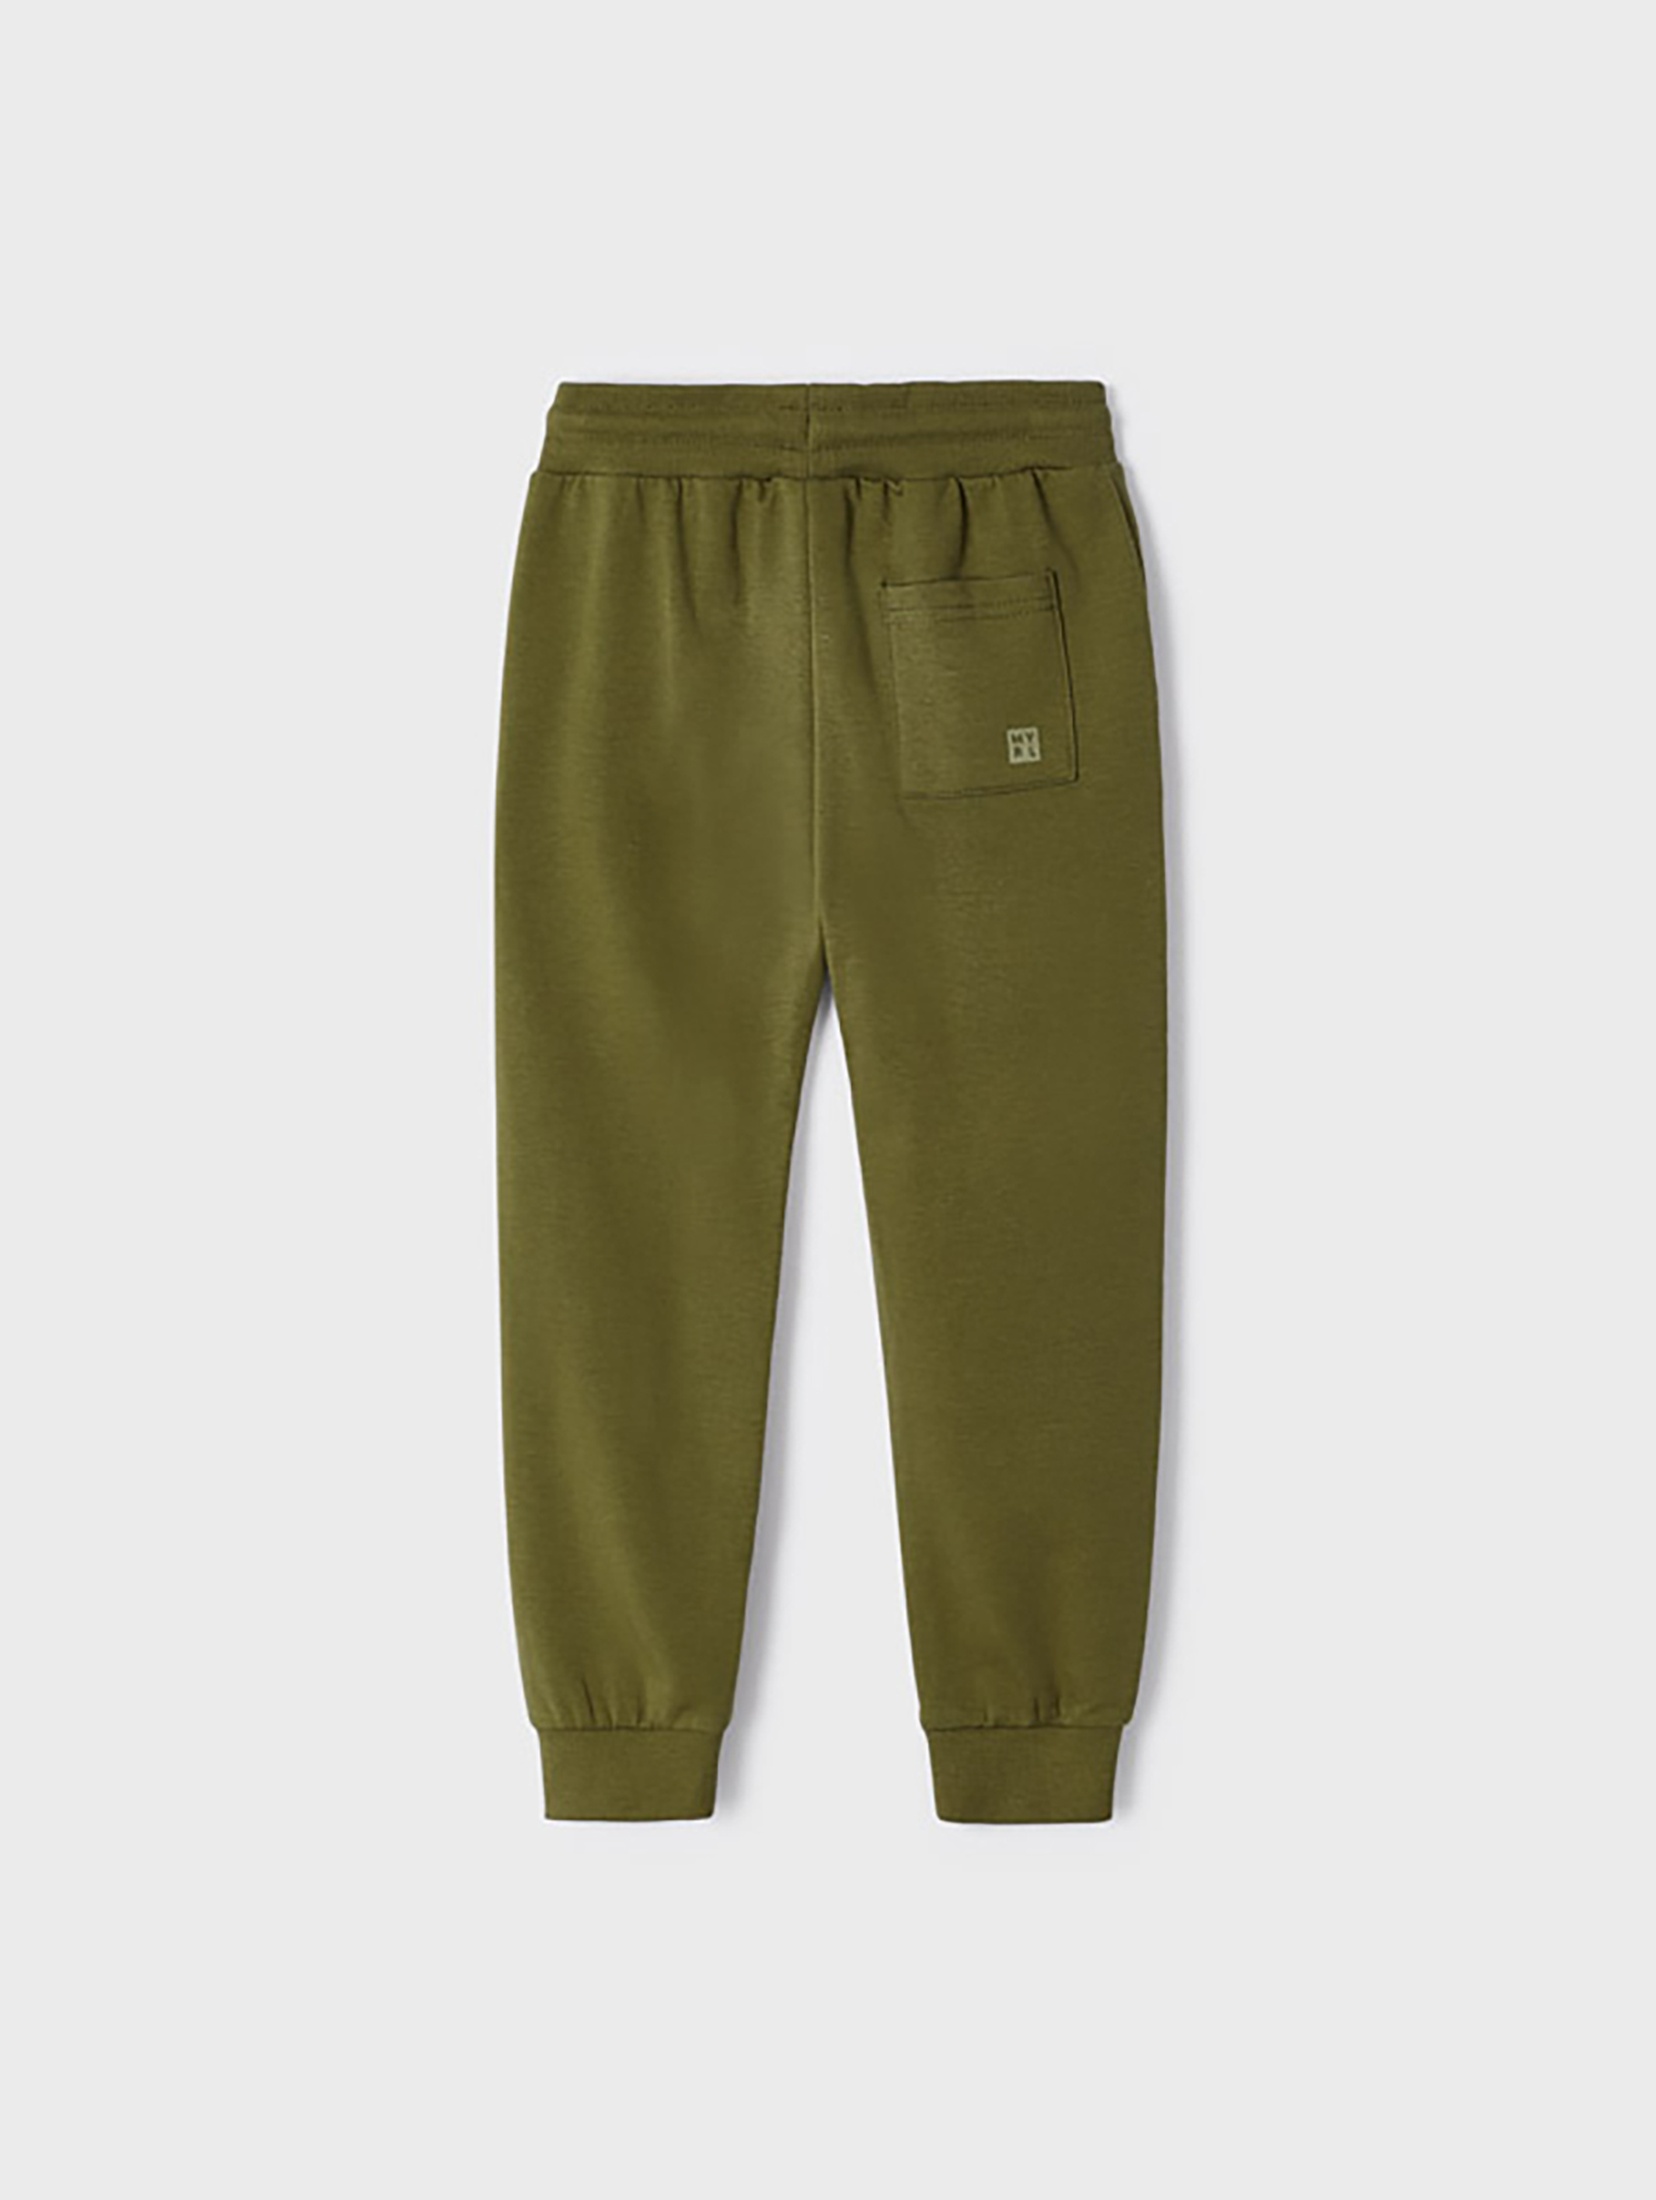 Spodnie dresowe dla chłopca Mayoral - zielone